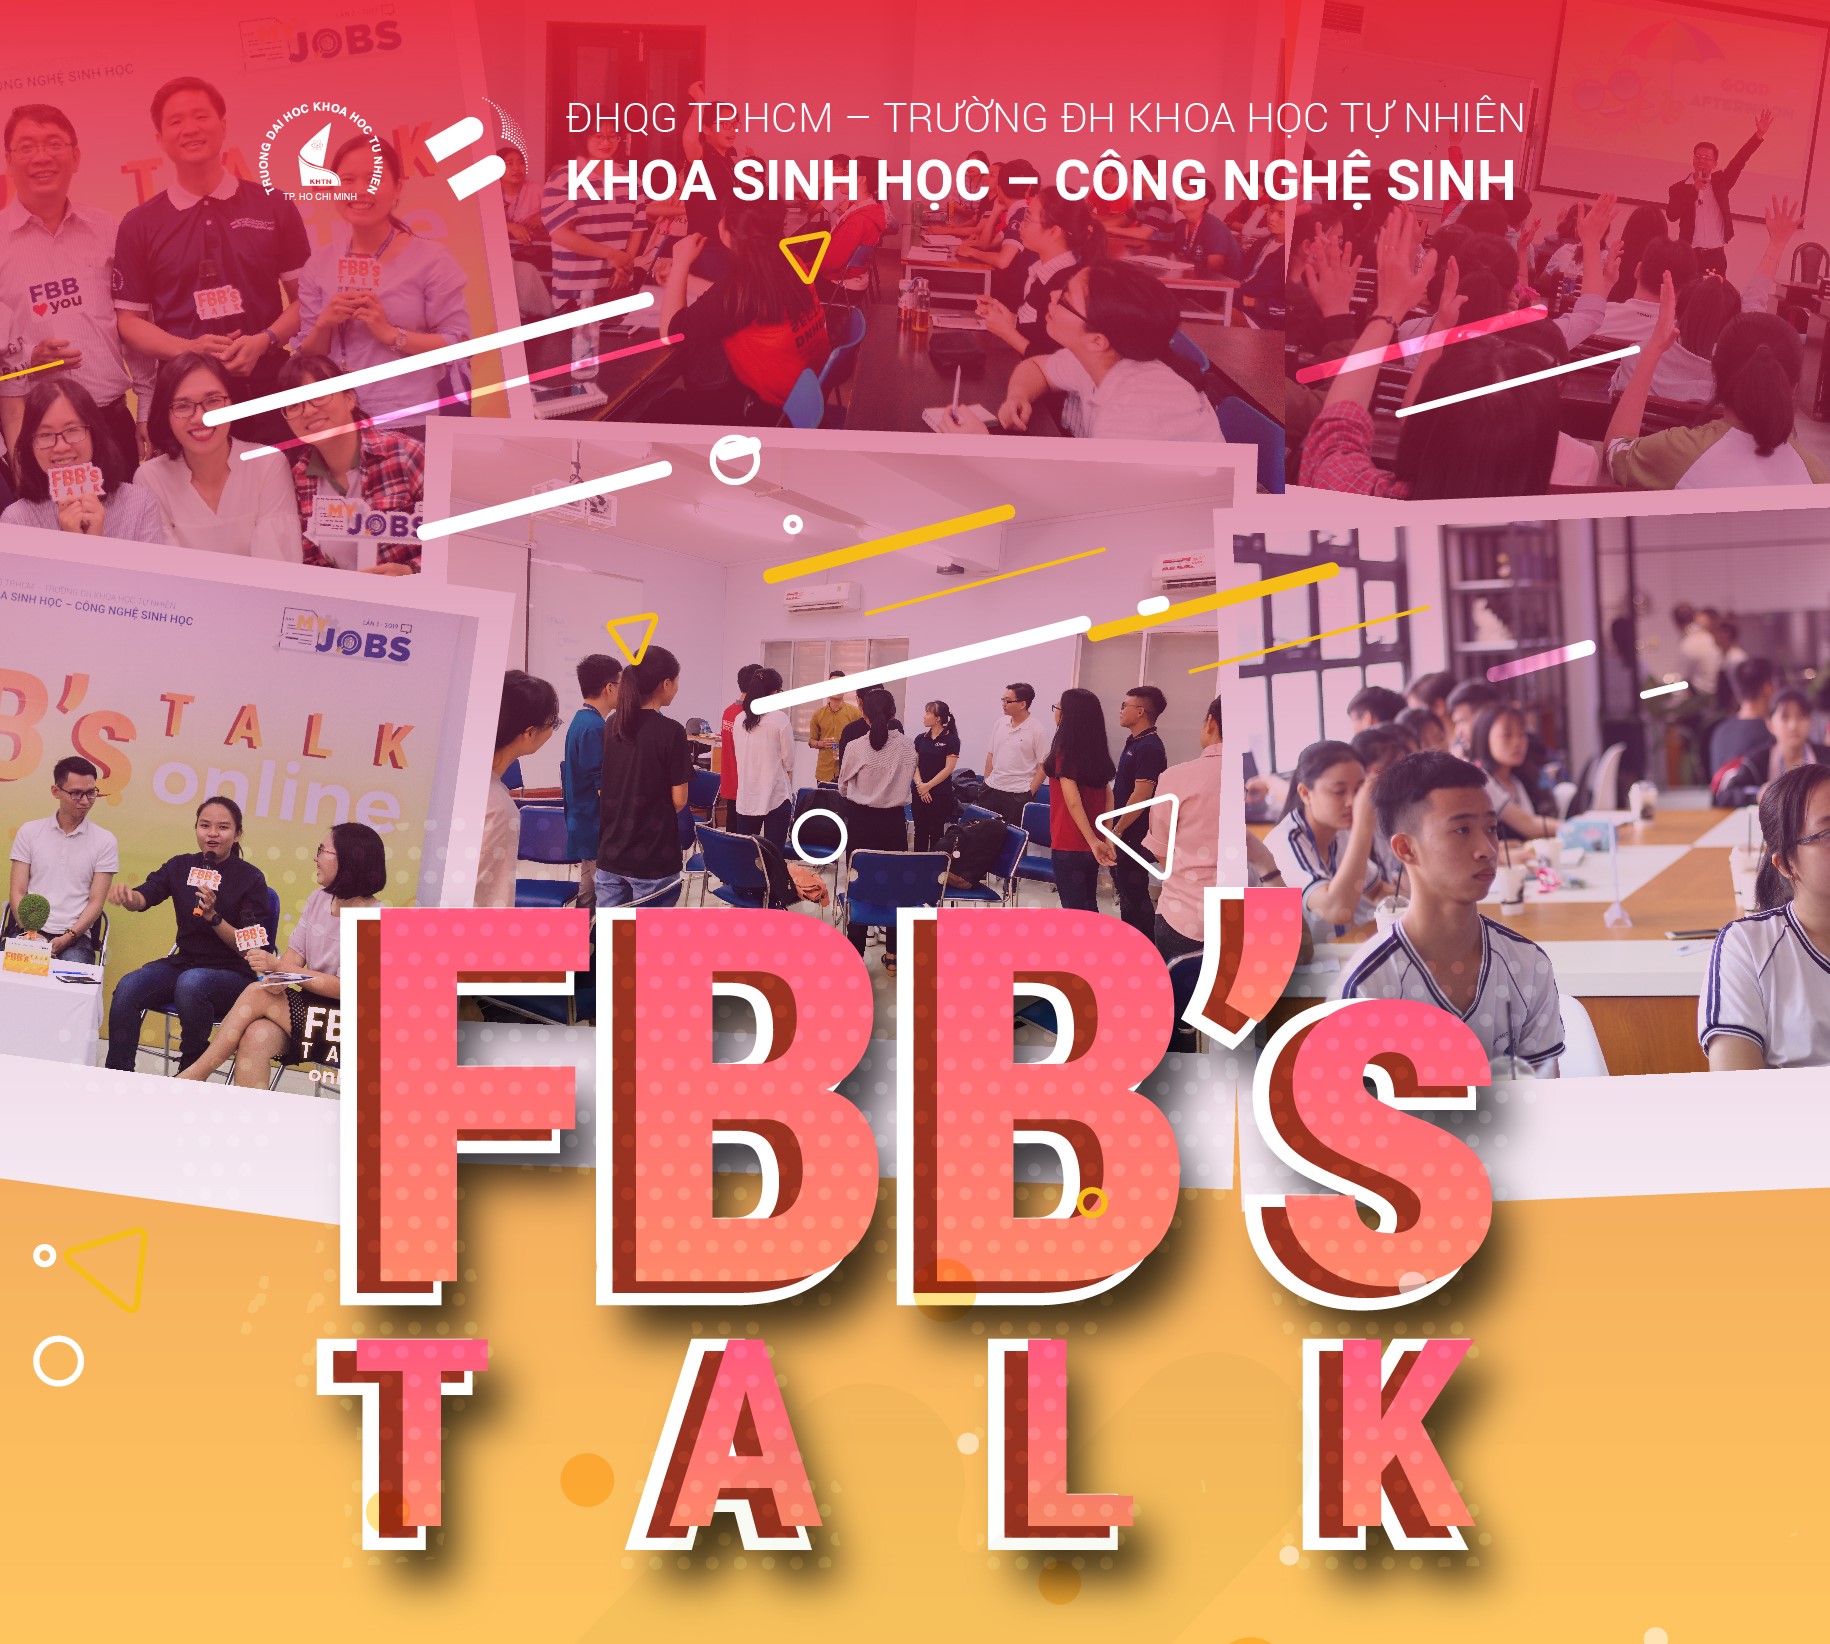 Chương trình FBB's talk - Kỹ năng Quản lý sự thay đổi